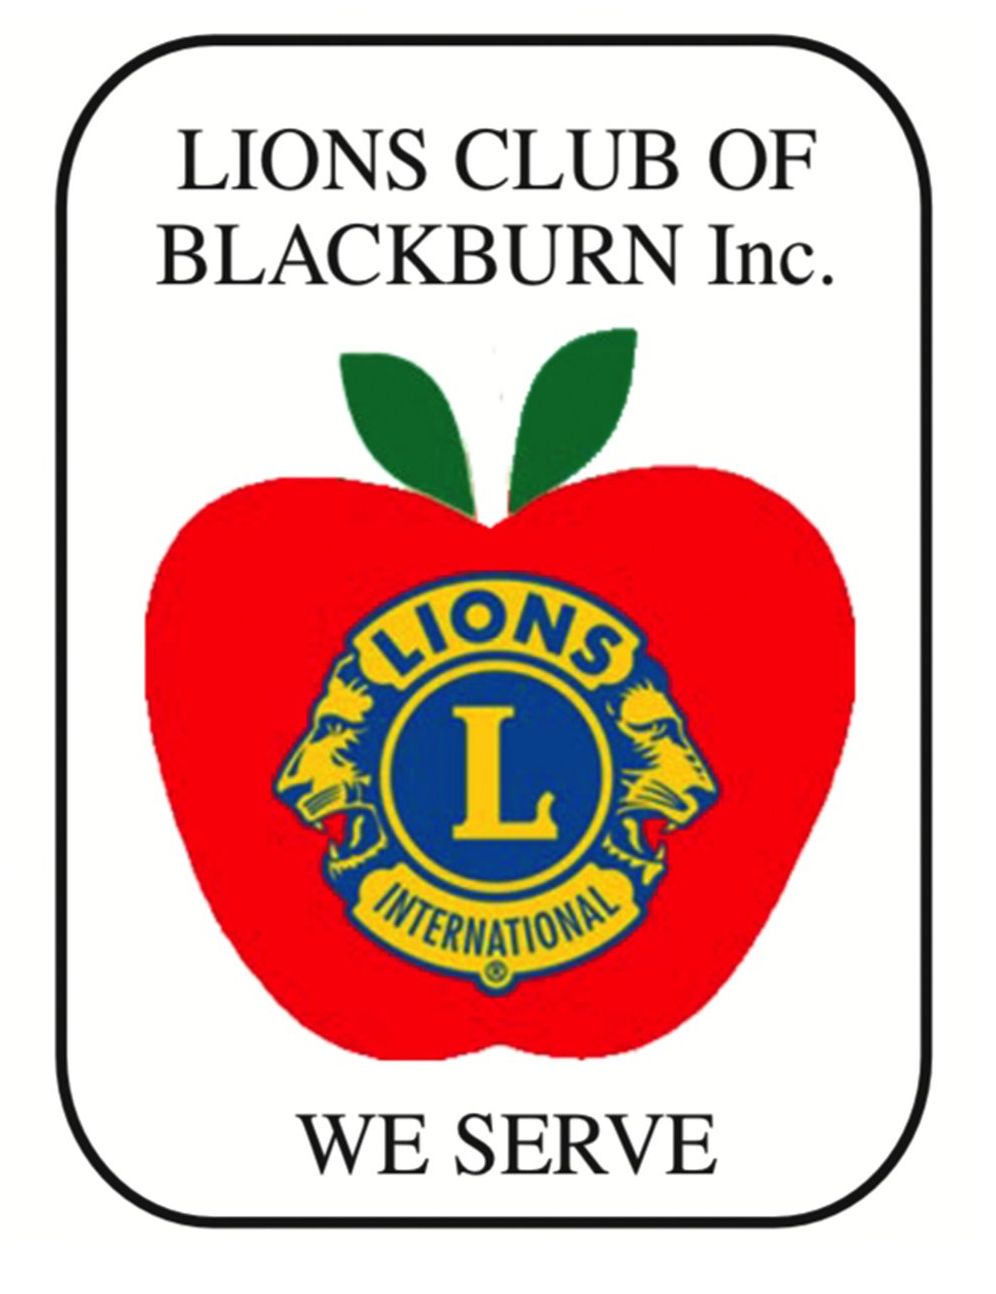 Lions Club of Blackburn